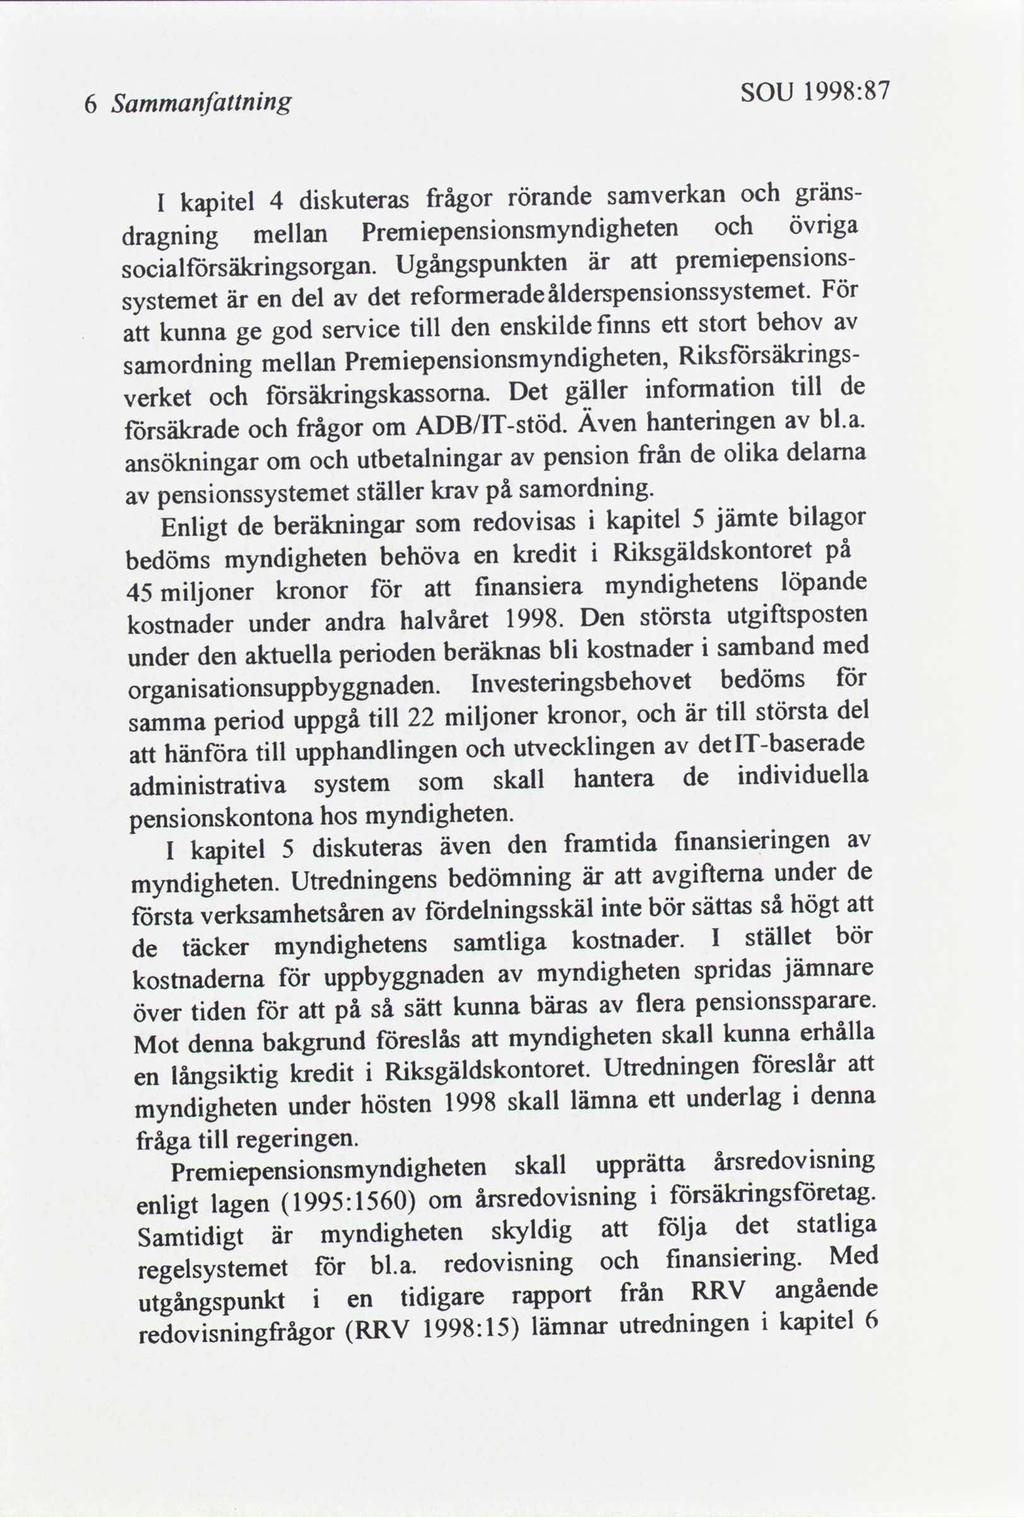 1998:87 SOU Sammanfnng 6 gränssamverkan rörande frågor dskuteras kaptel 4 I övrga Premepensonsmyndgheten mellan dragnng premepensons Ugångspunkten är socalförsäkrngsorgan.